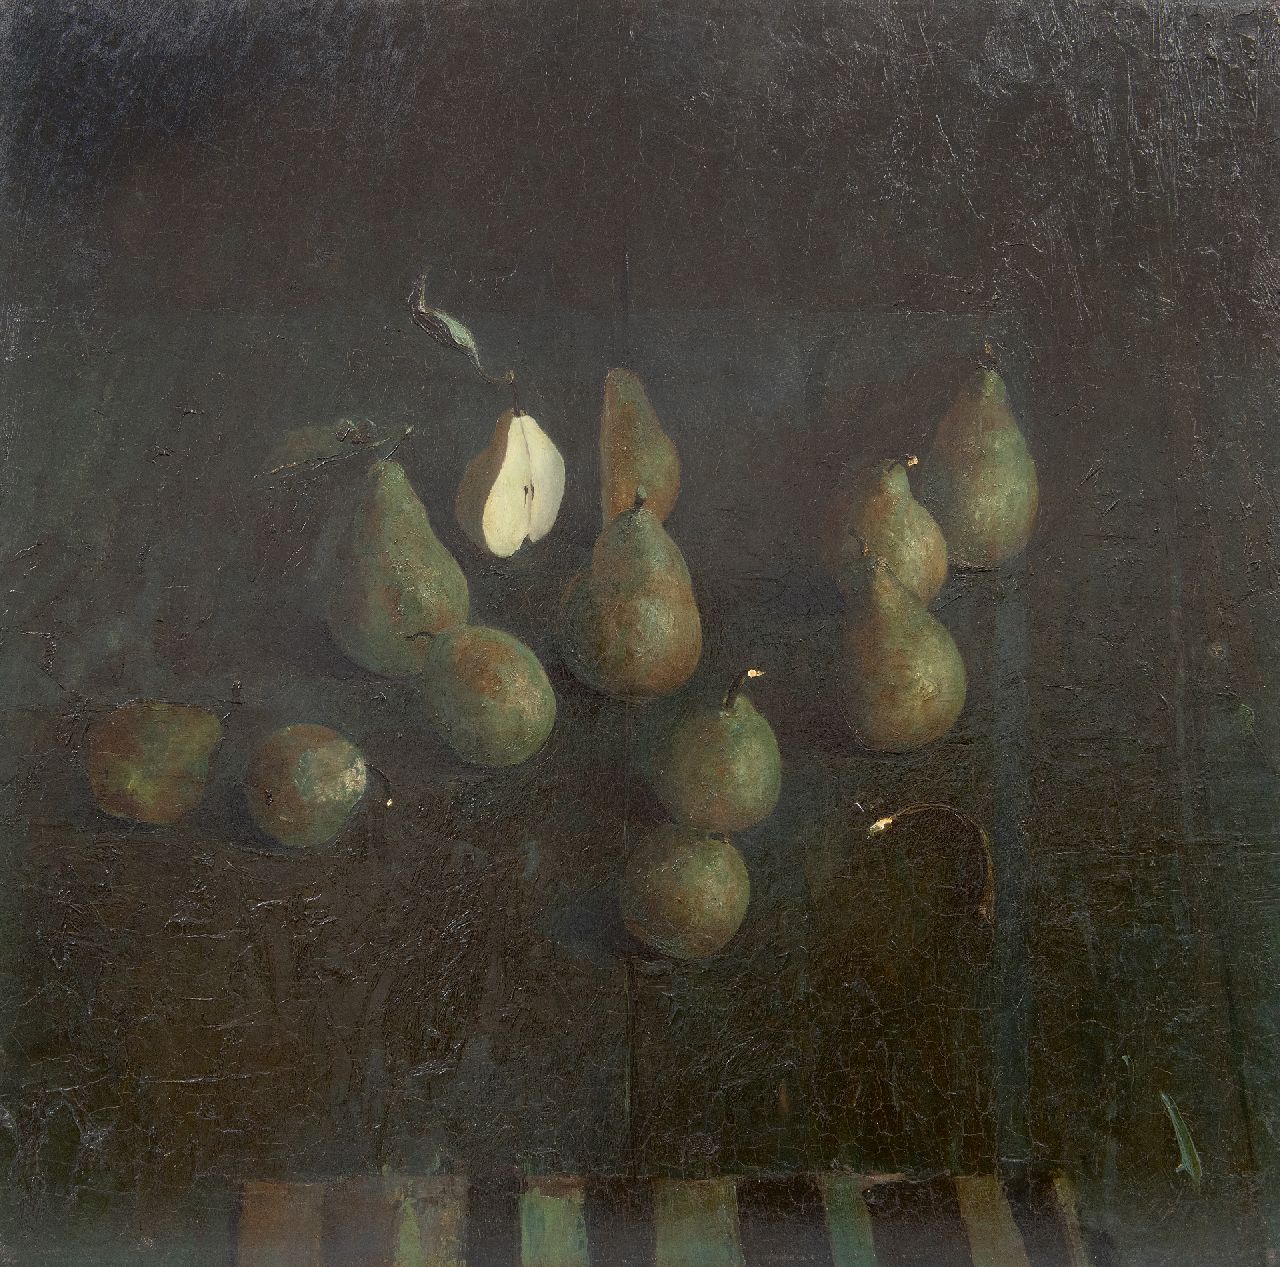 Kooi J. van der | Jan van der Kooi | Paintings offered for sale | Pears, oil on board 59.5 x 60.0 cm, signed l.c. and dated 1985